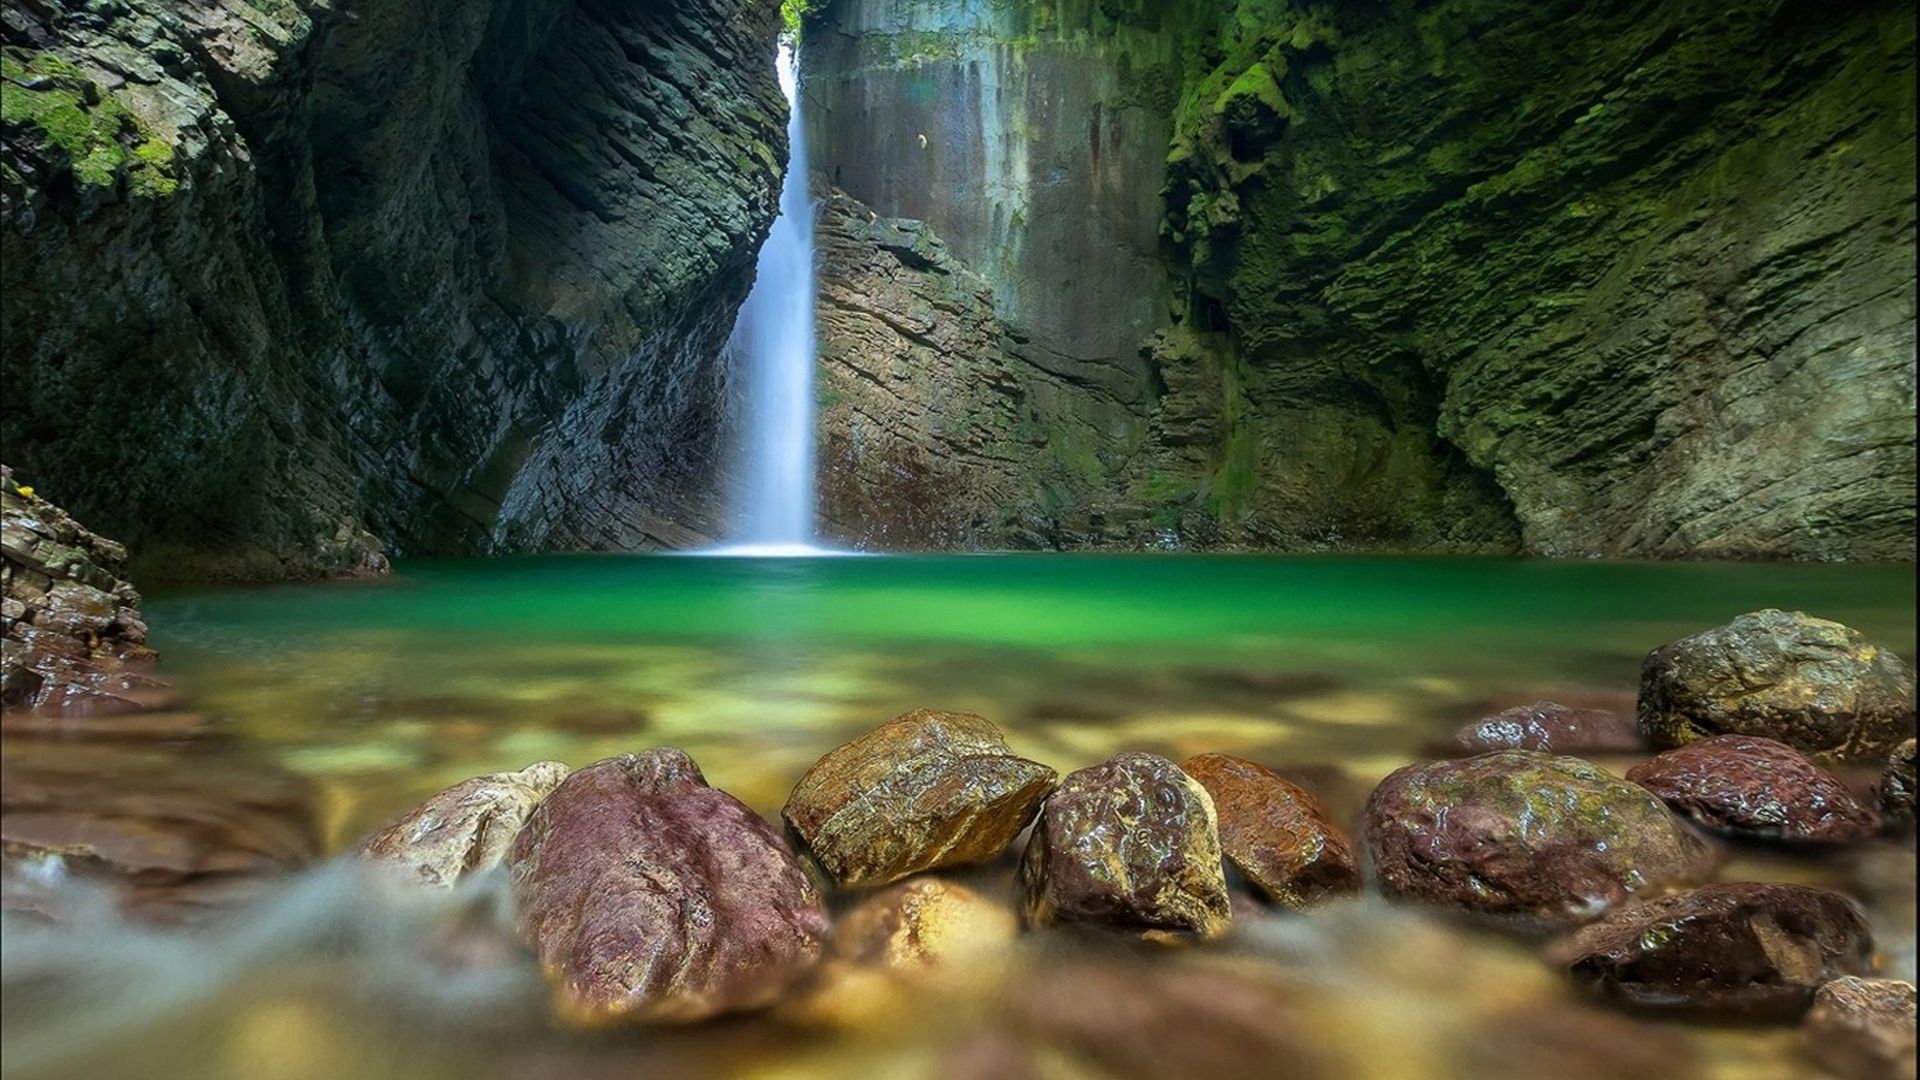 Обои Водопад Waterfall Cave Earth Forest 4k Природа 18277